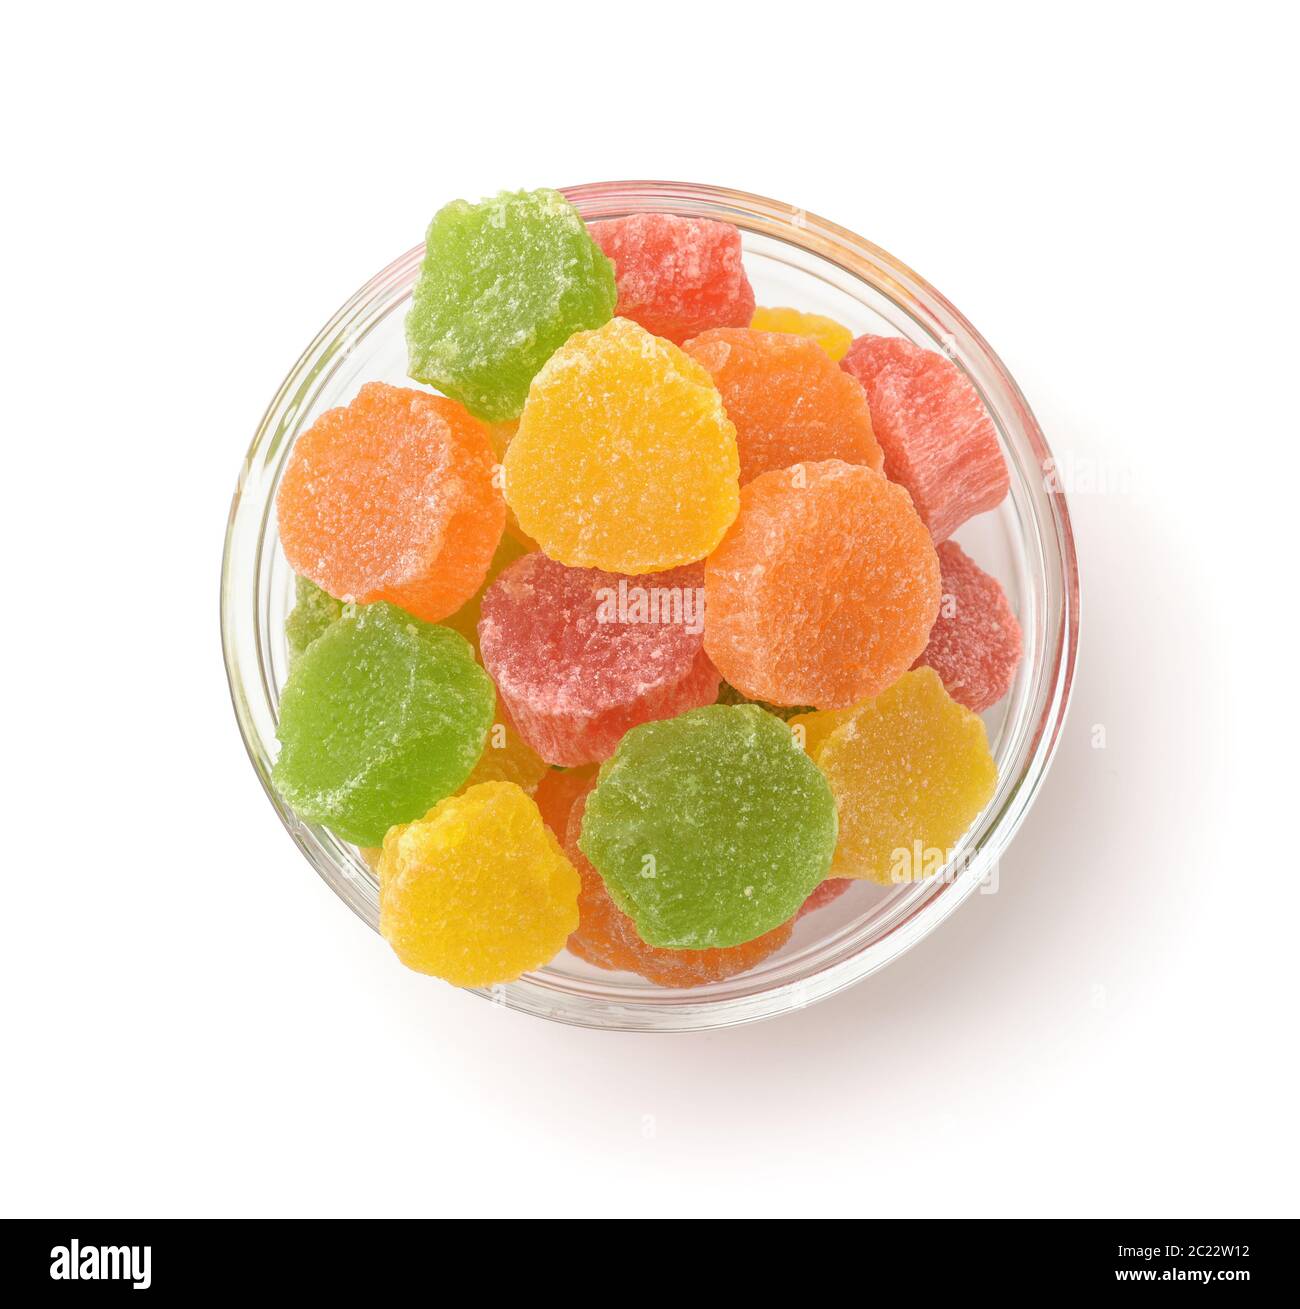 Vue de dessus de fruits secs confits colorés dans un bol en verre isolé sur blanc Banque D'Images